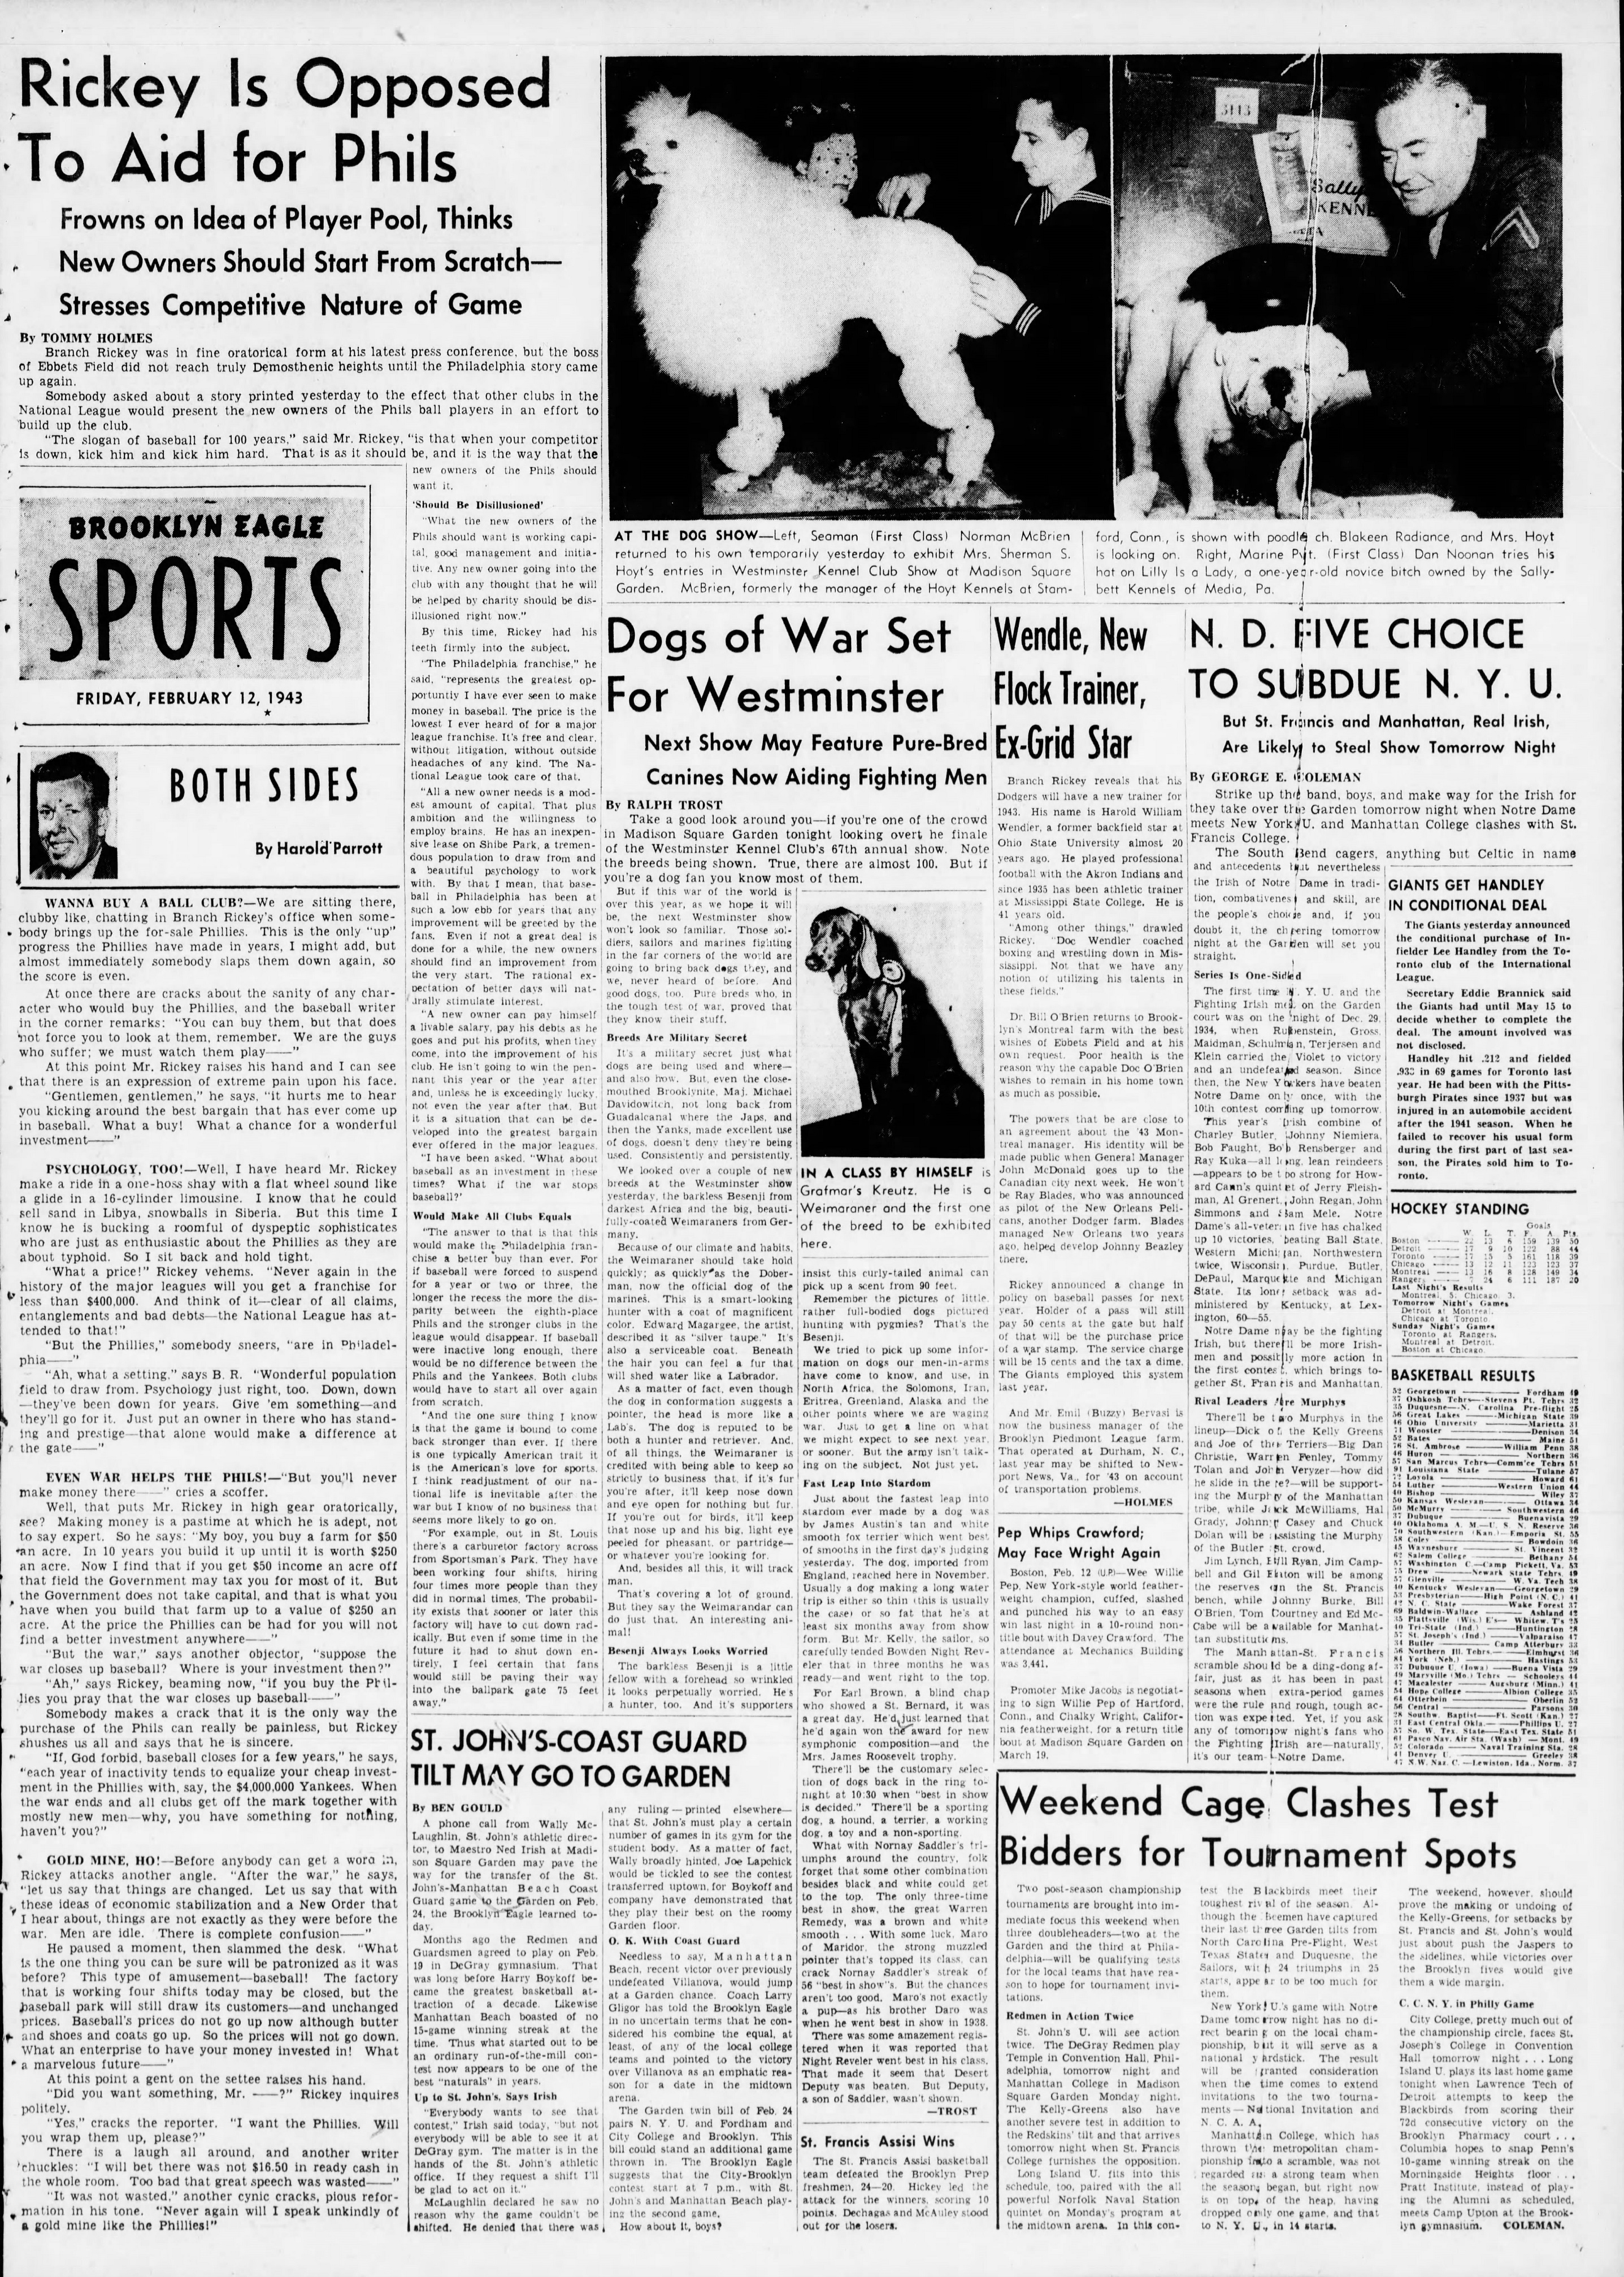 The_Brooklyn_Daily_Eagle_Fri__Feb_12__1943_(4).jpg